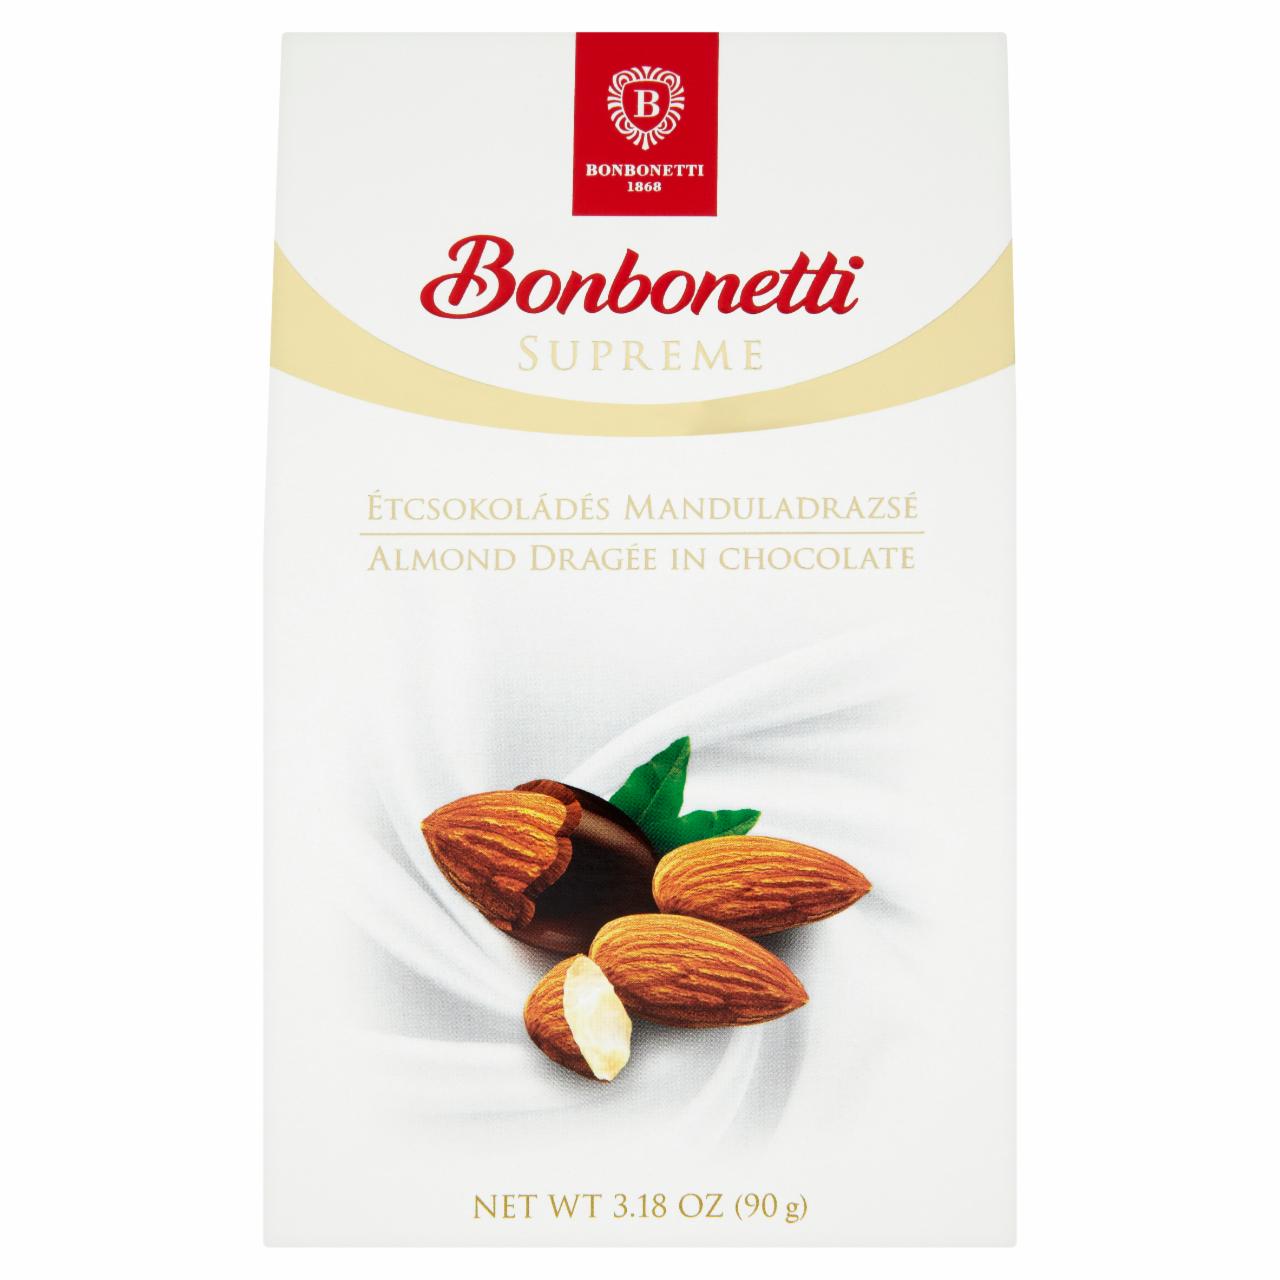 Képek - Bonbonetti Supreme étcsokoládés manduladrazsé 90 g